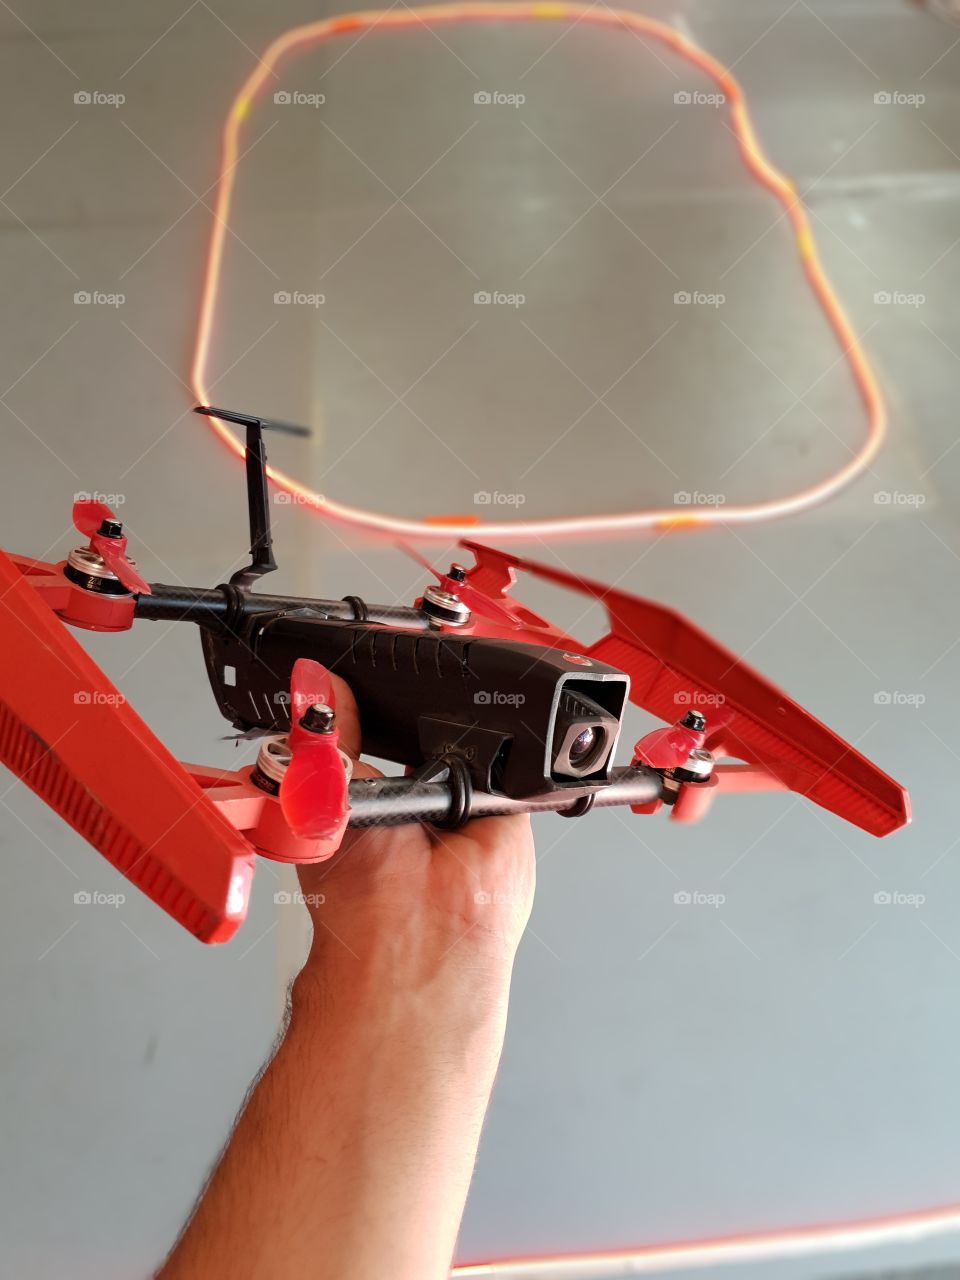 falcore drone